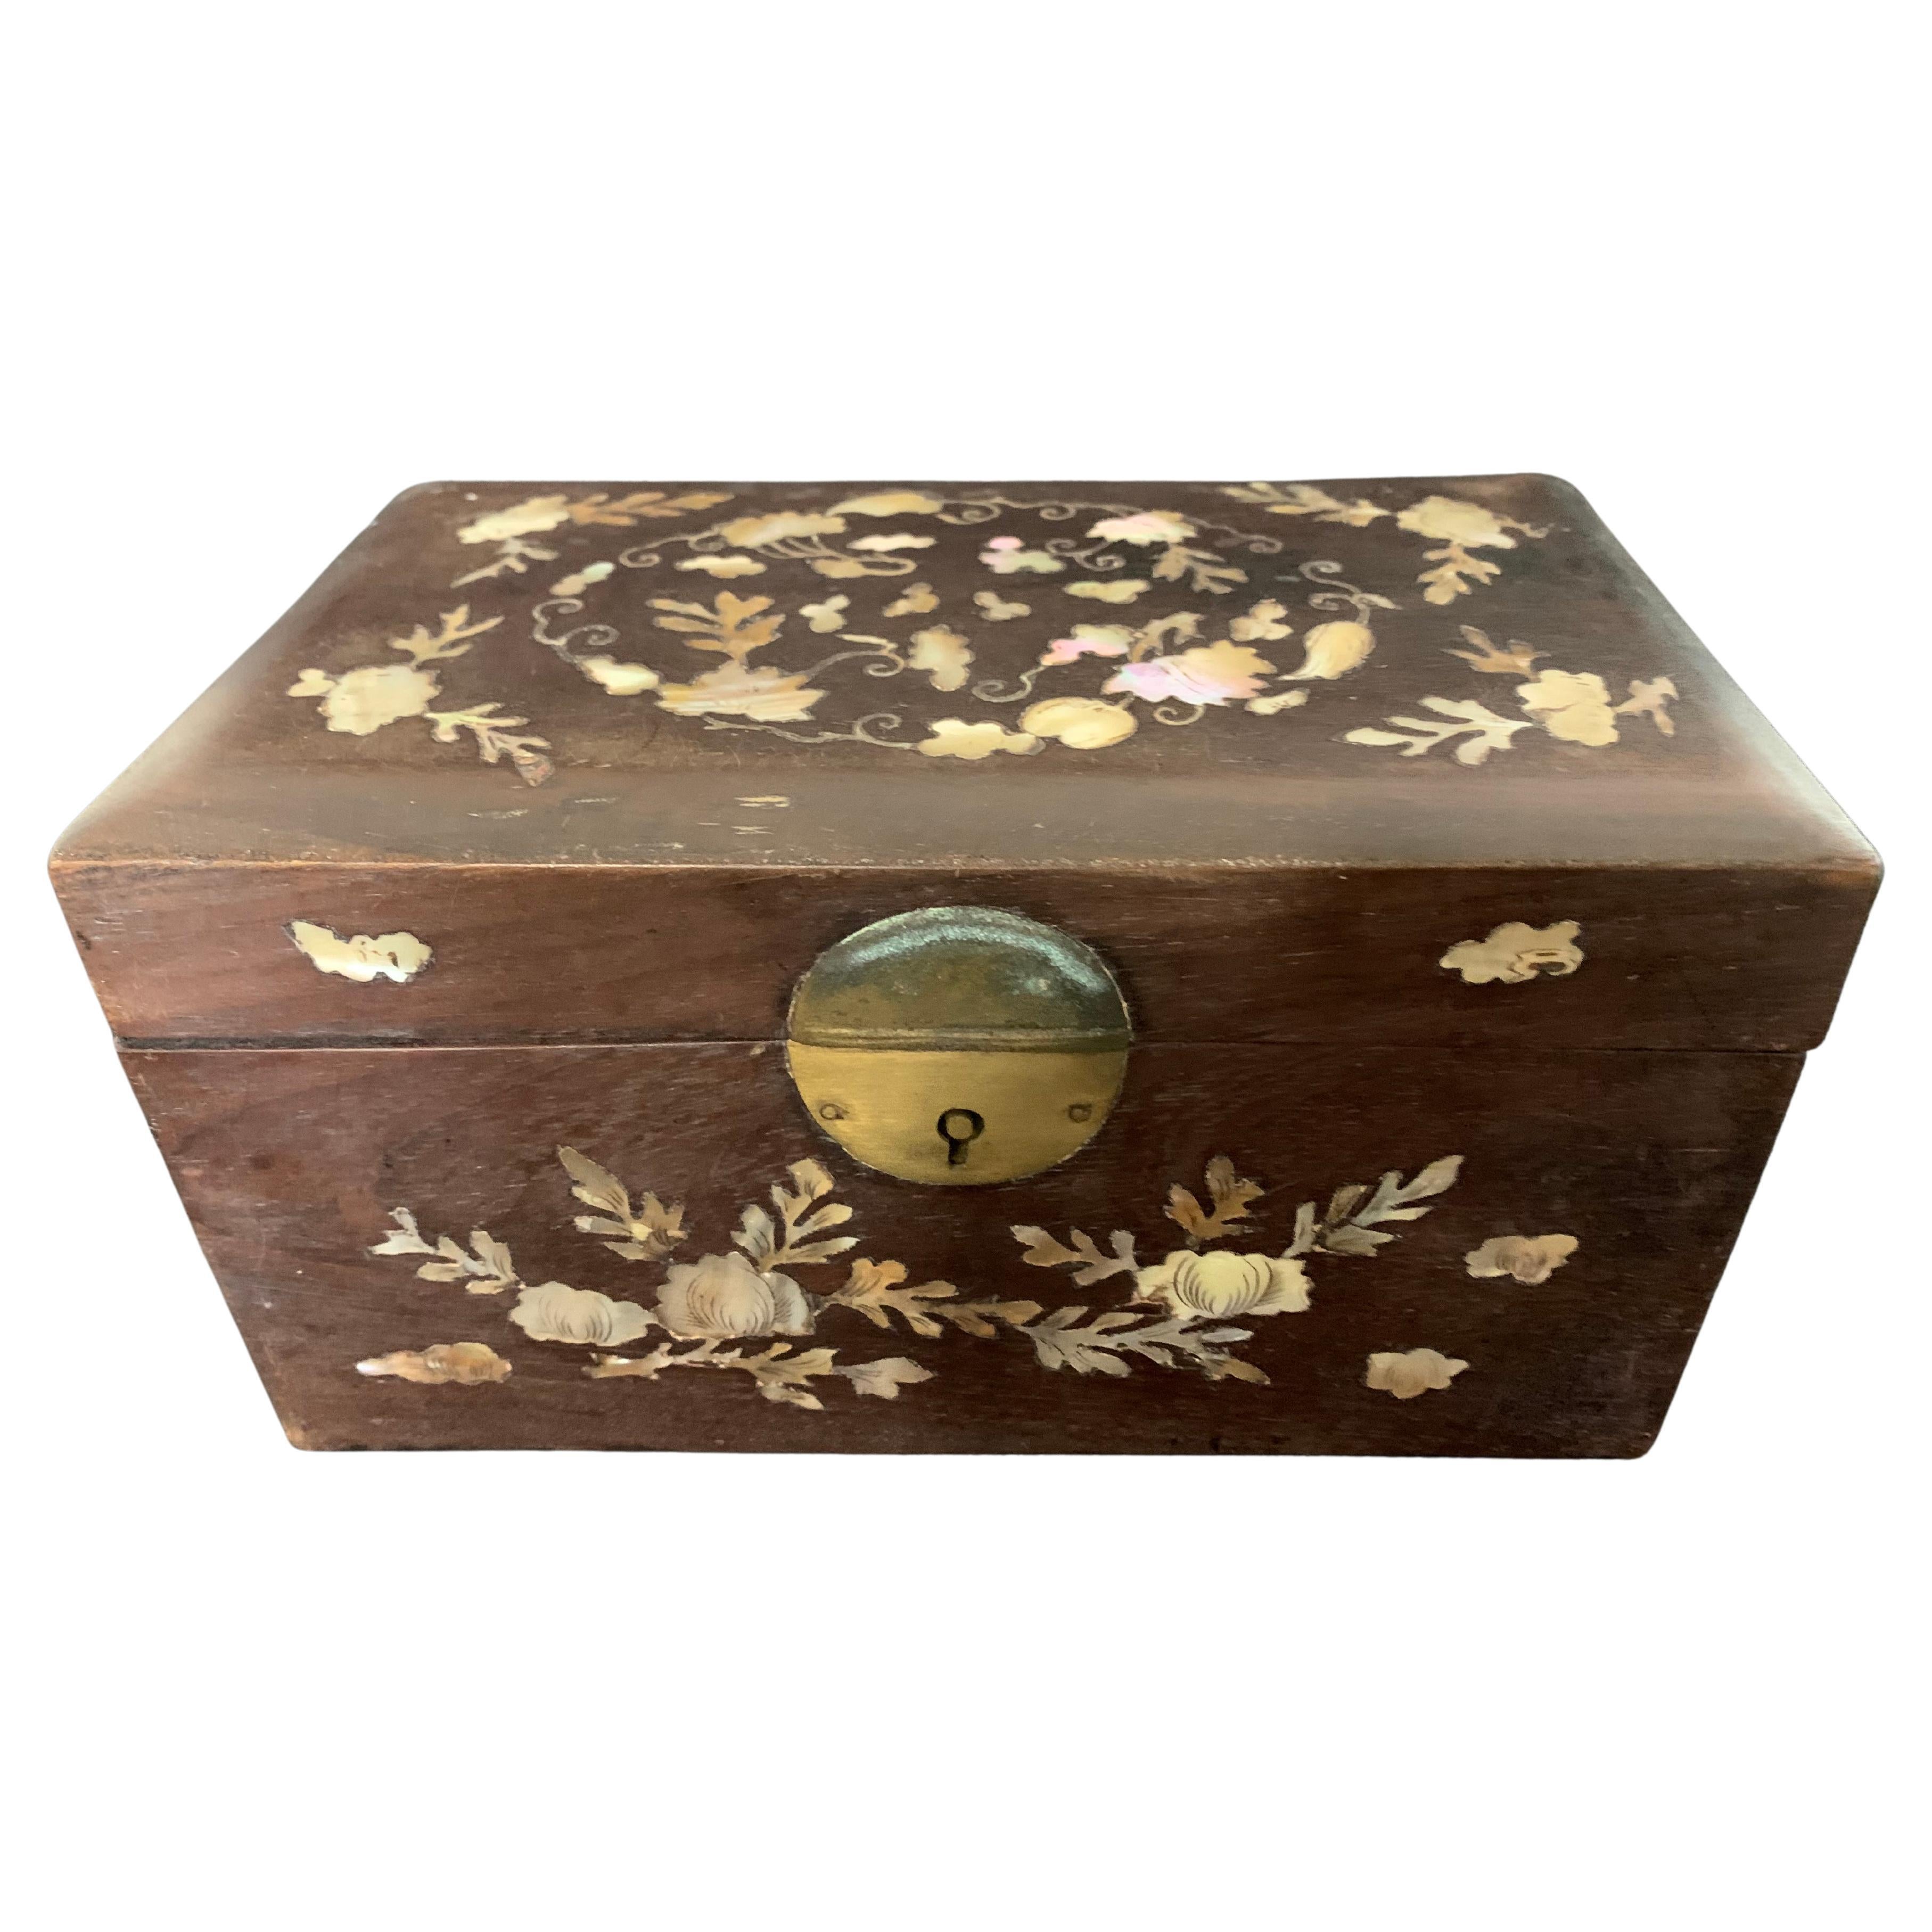 Indochinesische Kiste aus Holz und Perlmutt um 1900